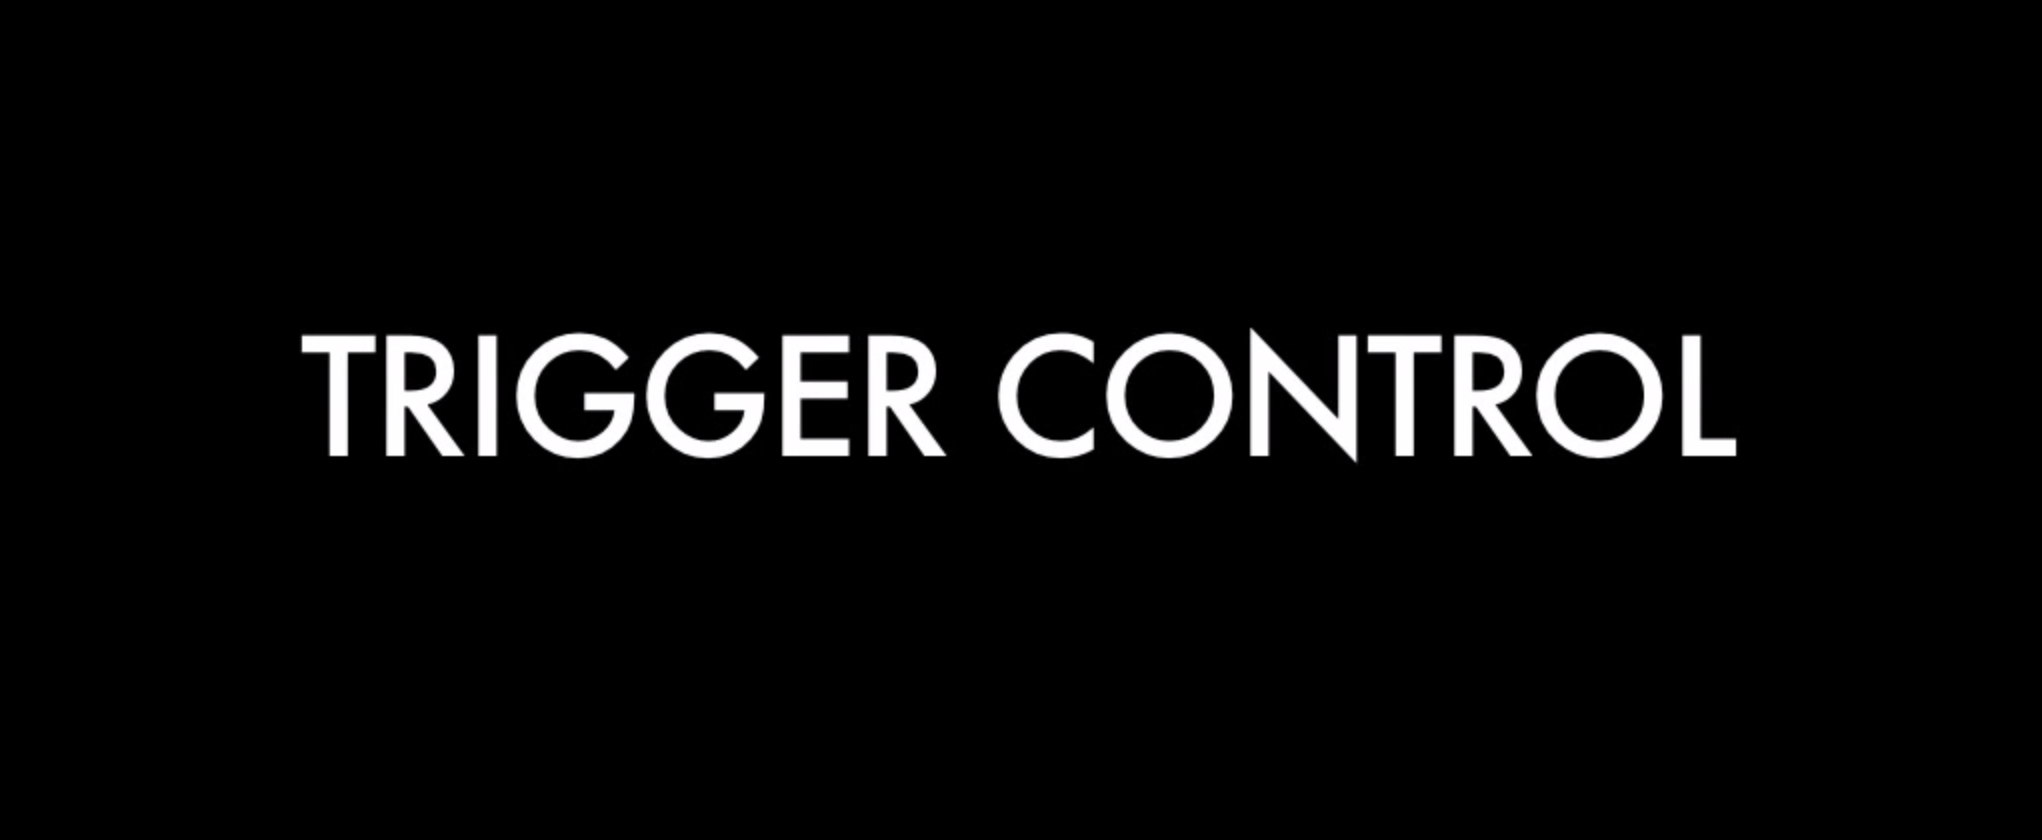 trigger control